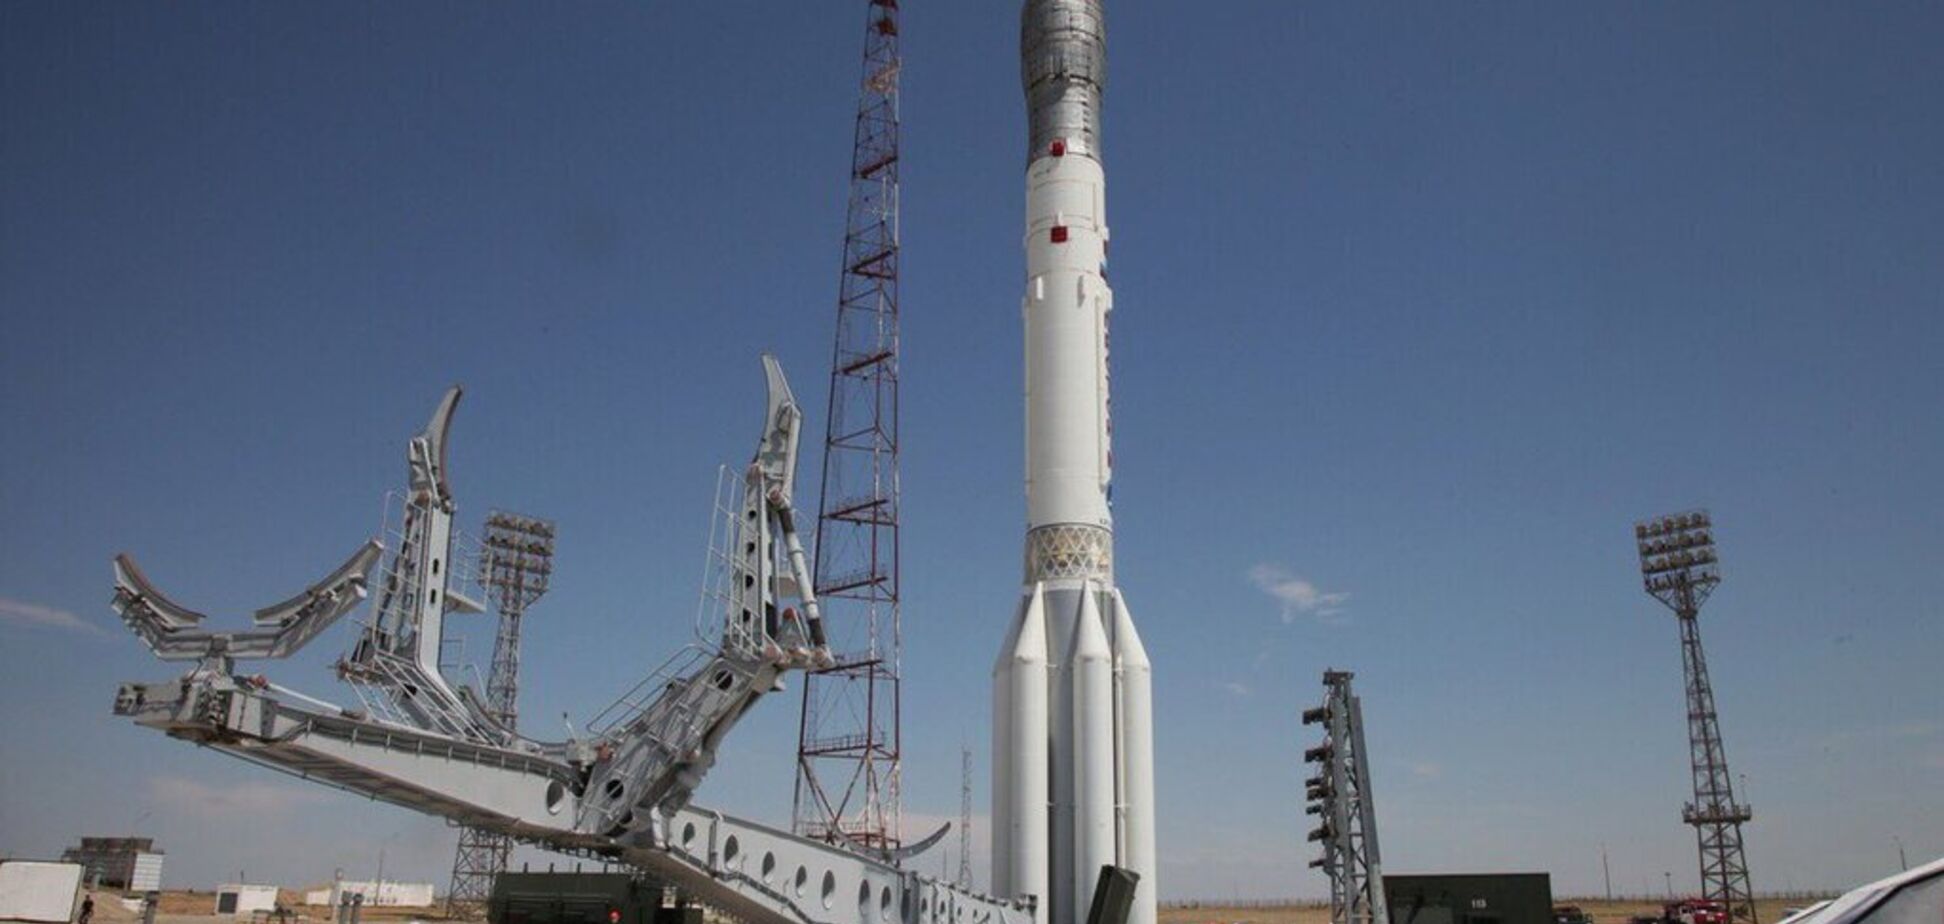 Опять провал: в России перед запуском треснула ракета